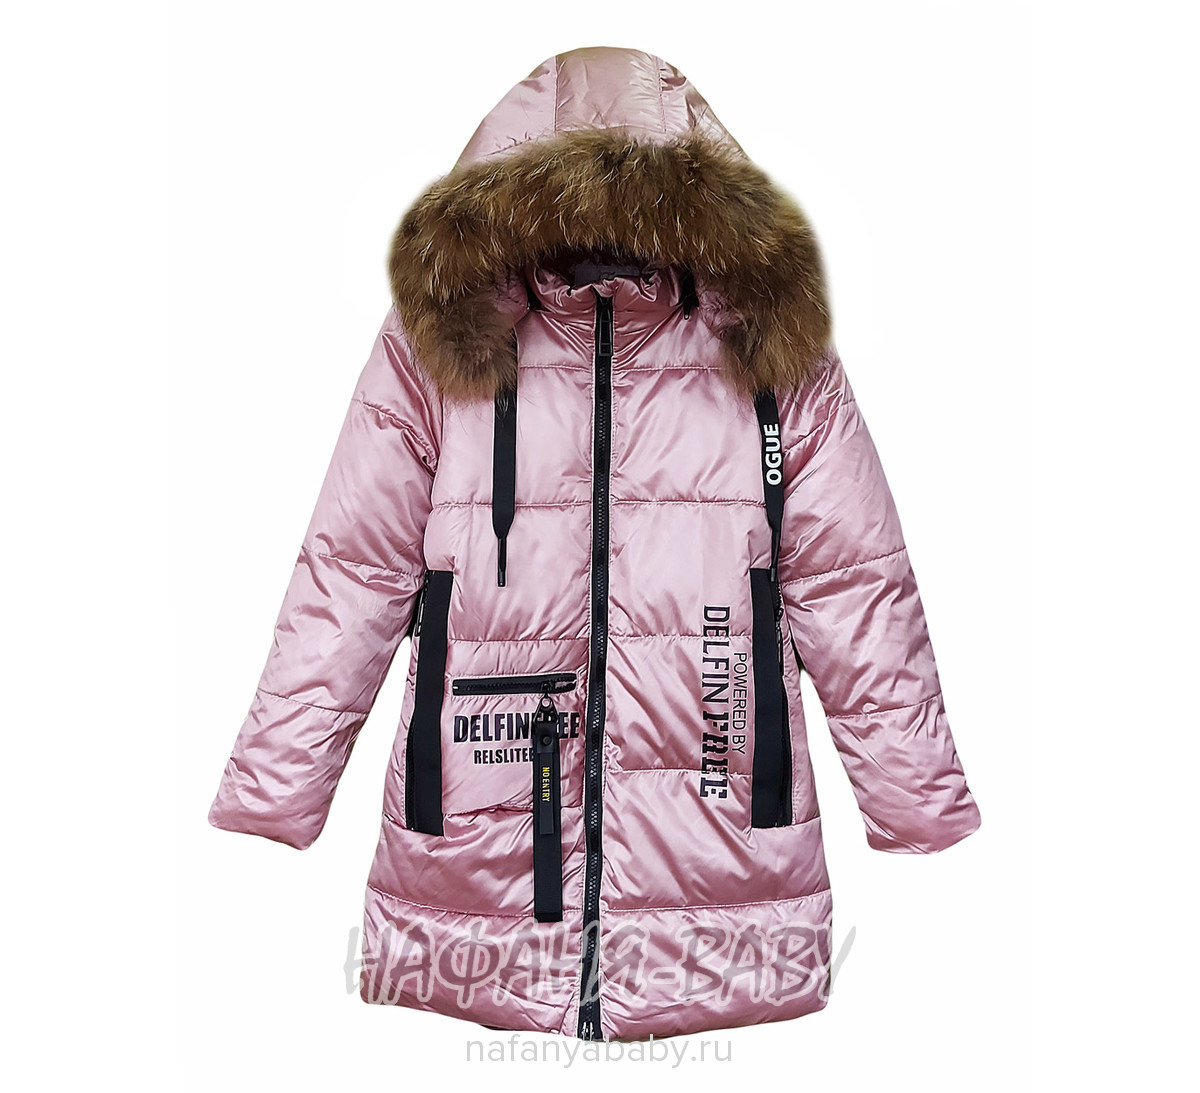 Зимнее пальто DELFIN-FREE, купить в интернет магазине Нафаня. арт: 2213.